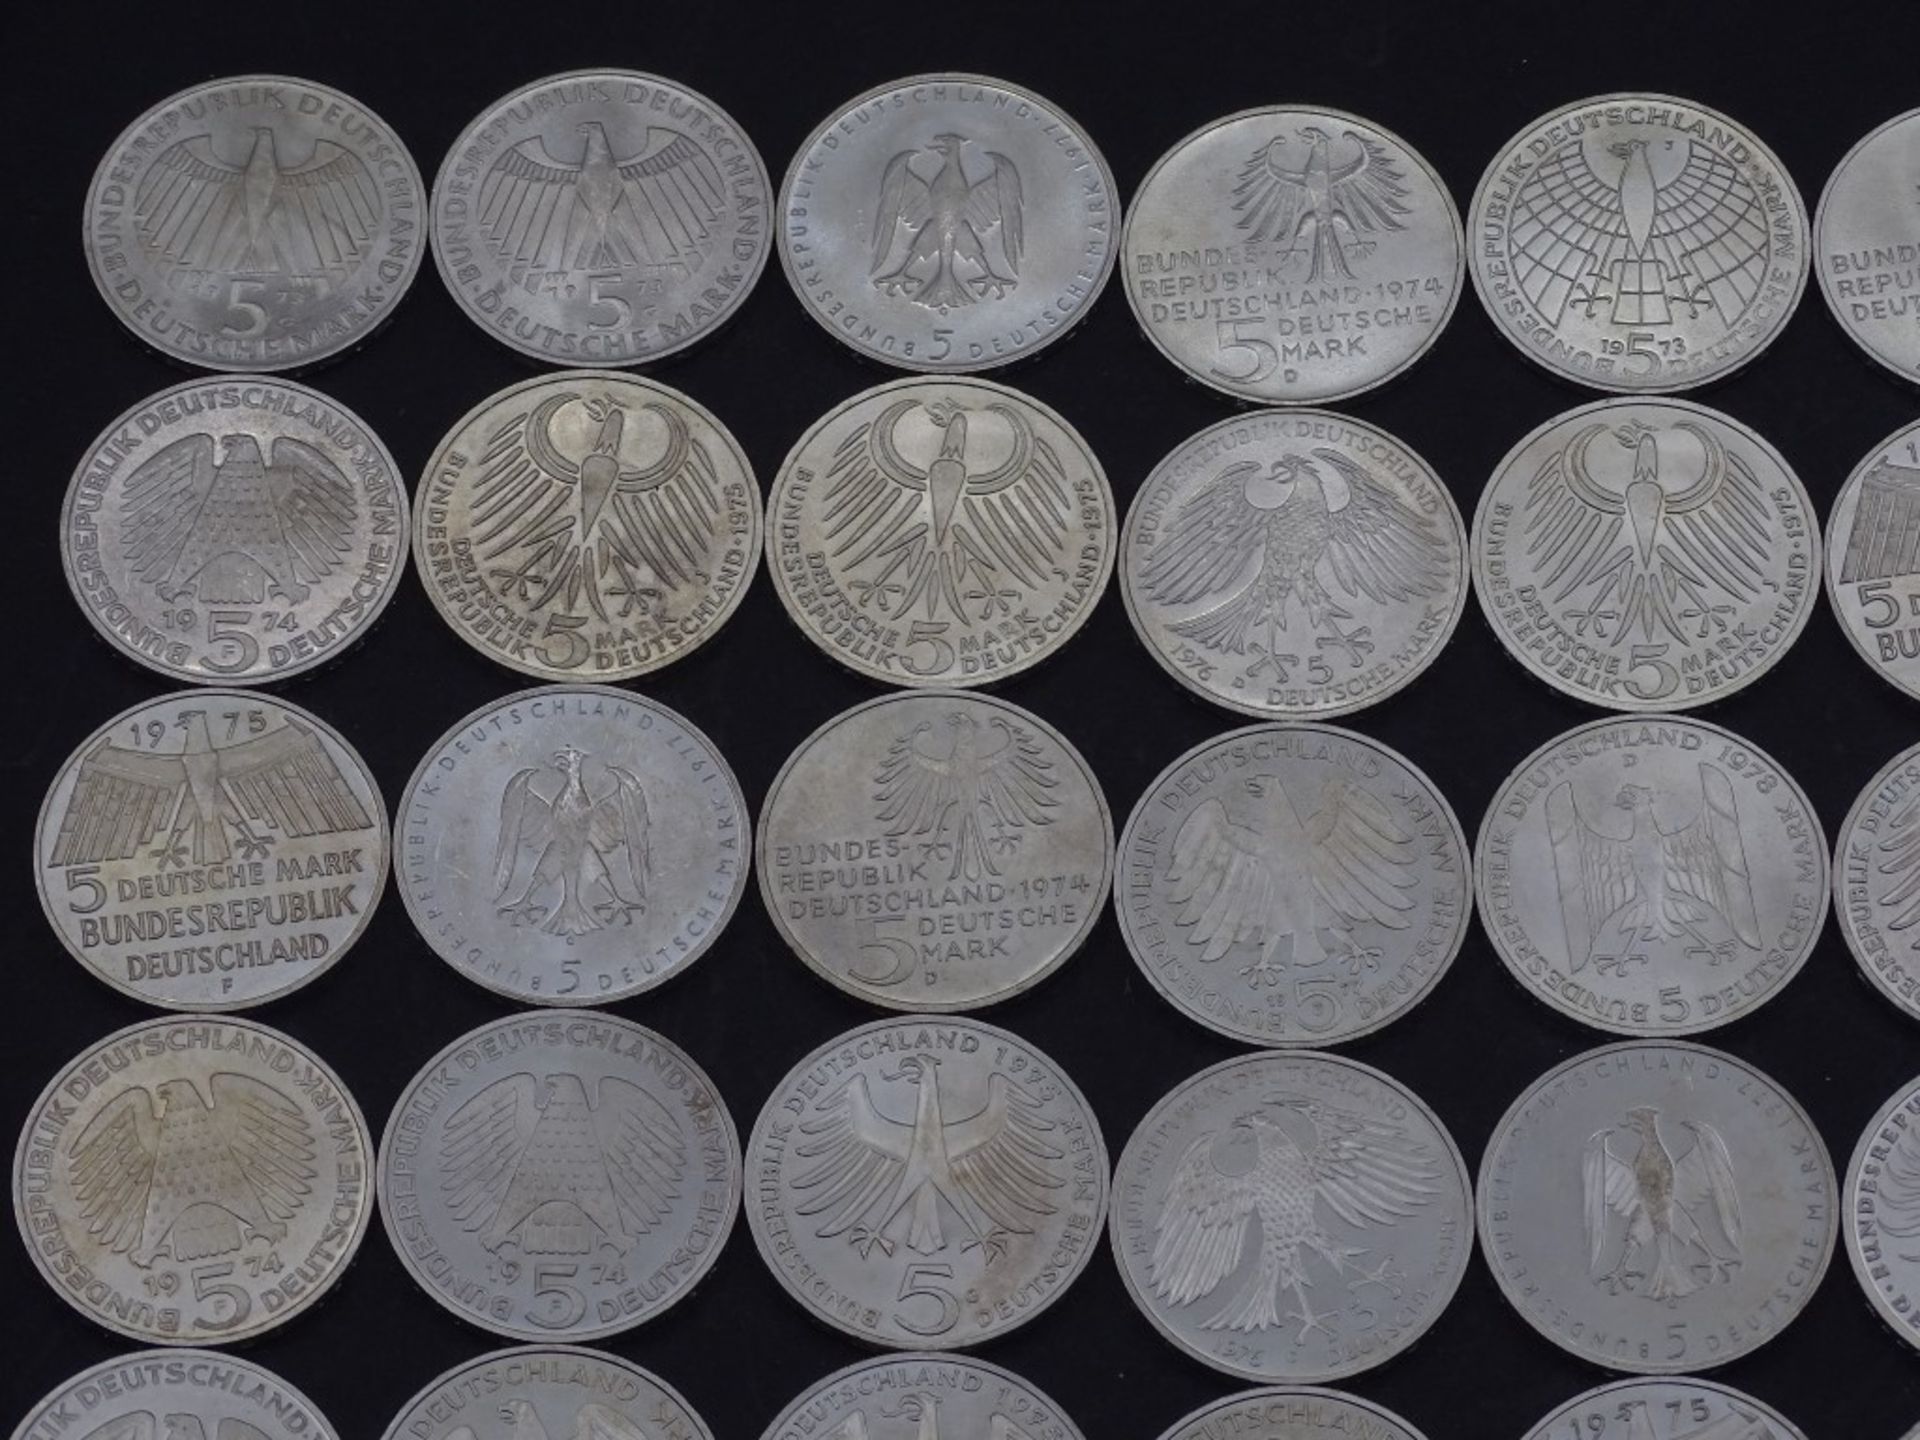 40x 5 DM Münzen,Silber,ges. 200 Deutsche Mar - Bild 2 aus 10